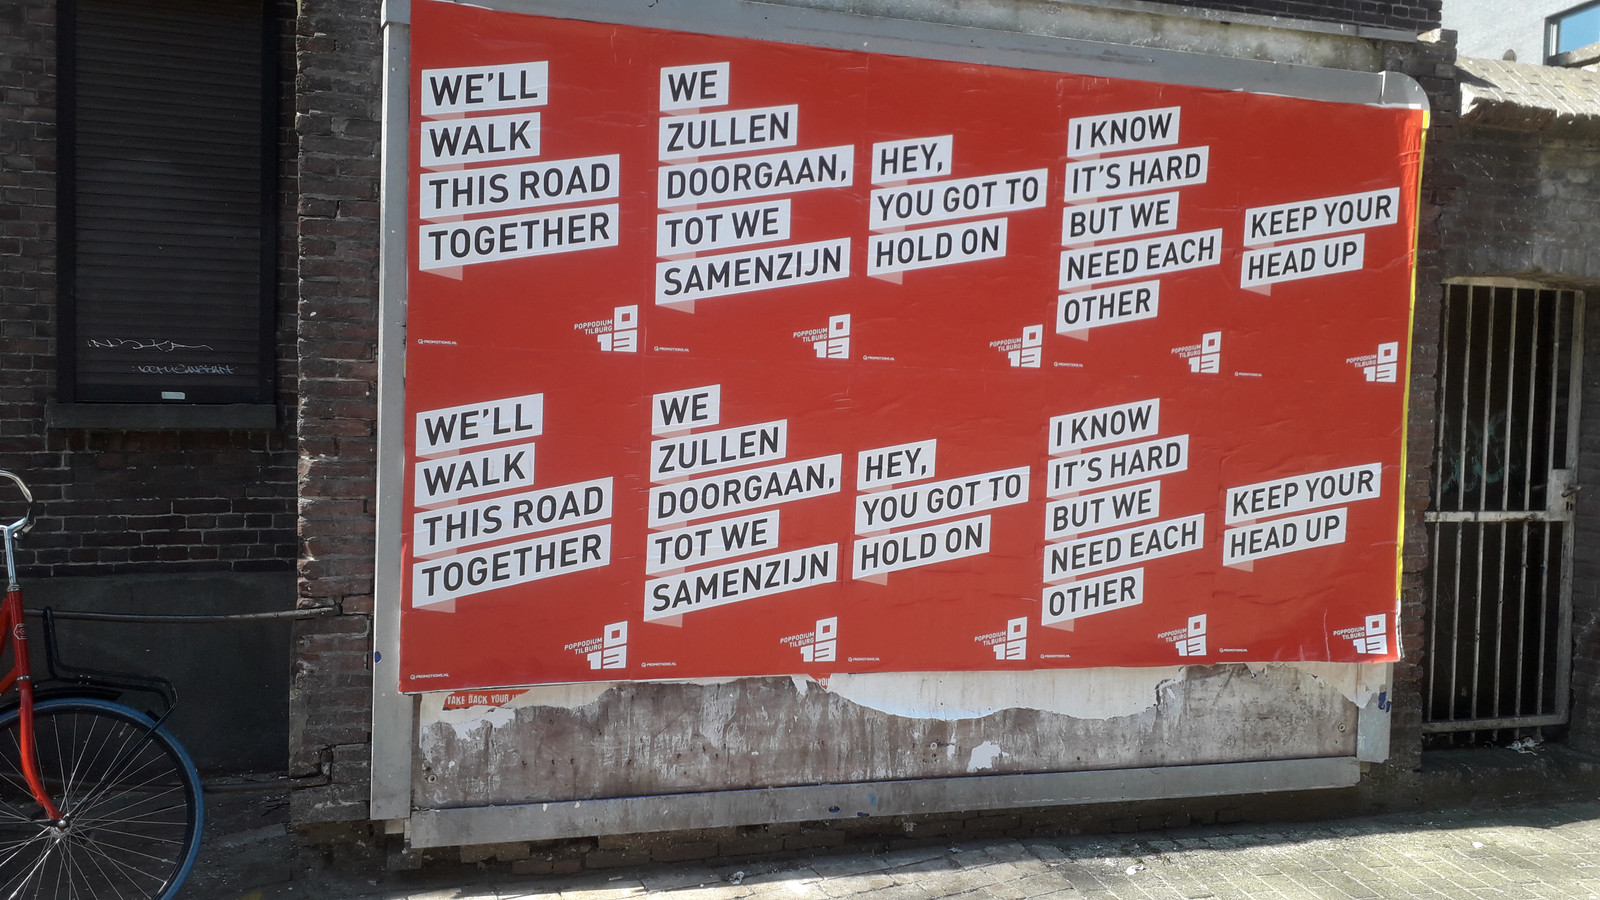 Hedendaags verlies herhaling Keep your head up': 013 plakt posters met opbeurende songteksten | Foto |  bd.nl